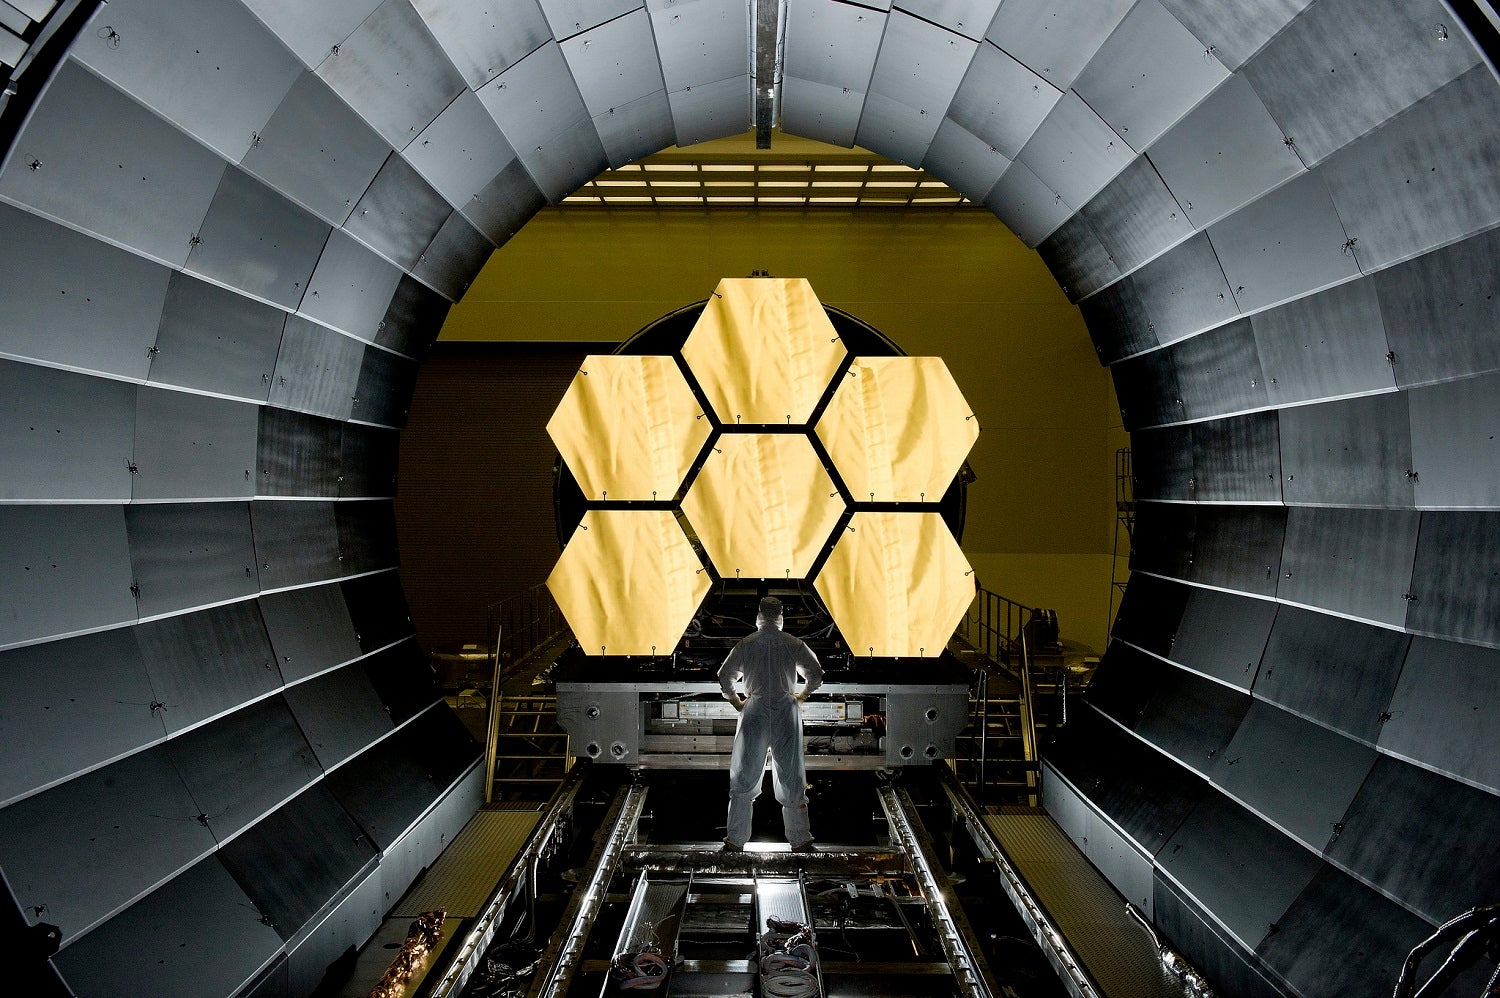 James Webb Teleskopu Karanlık Maddenin Gizemini Çözmeye Yardımcı Olabilir